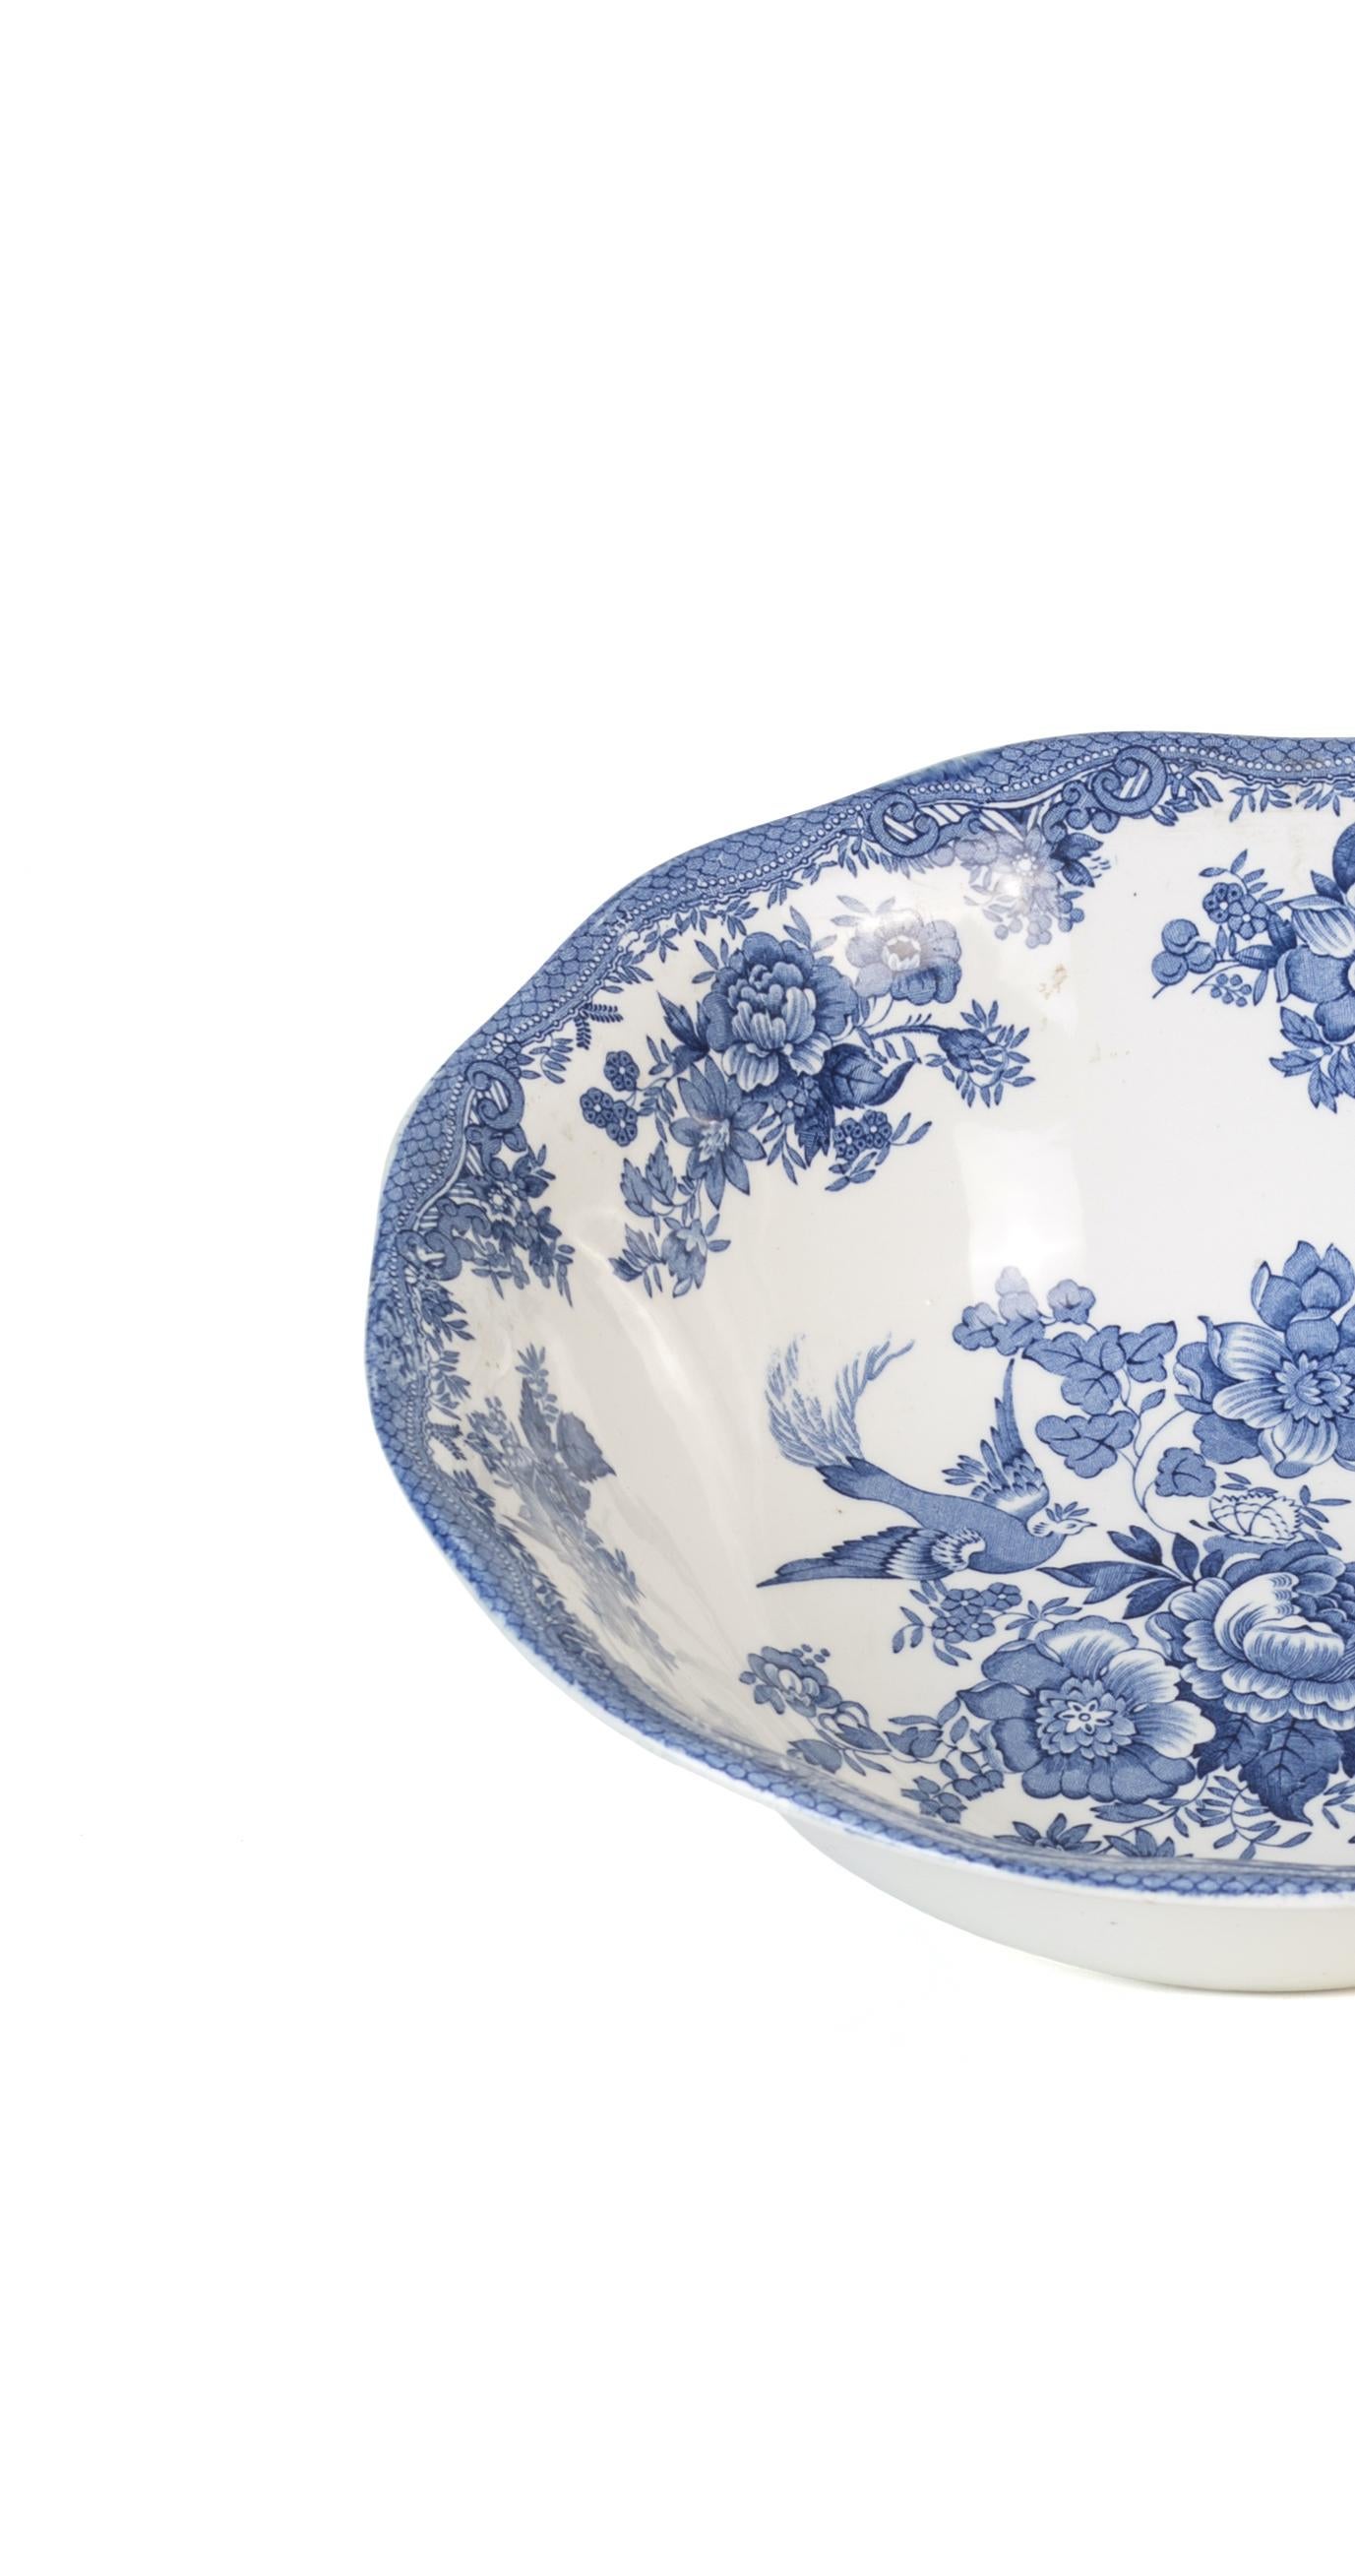 Le bol Vintage Elegwood est un élégant objet décoratif en porcelaine, réalisé au cours du 20ème siècle et réalisé par Wedgwood and Co.

Ce saladier très élégant est décoré de la garniture typique de la manufacture Wedgwood, de couleur bleue et